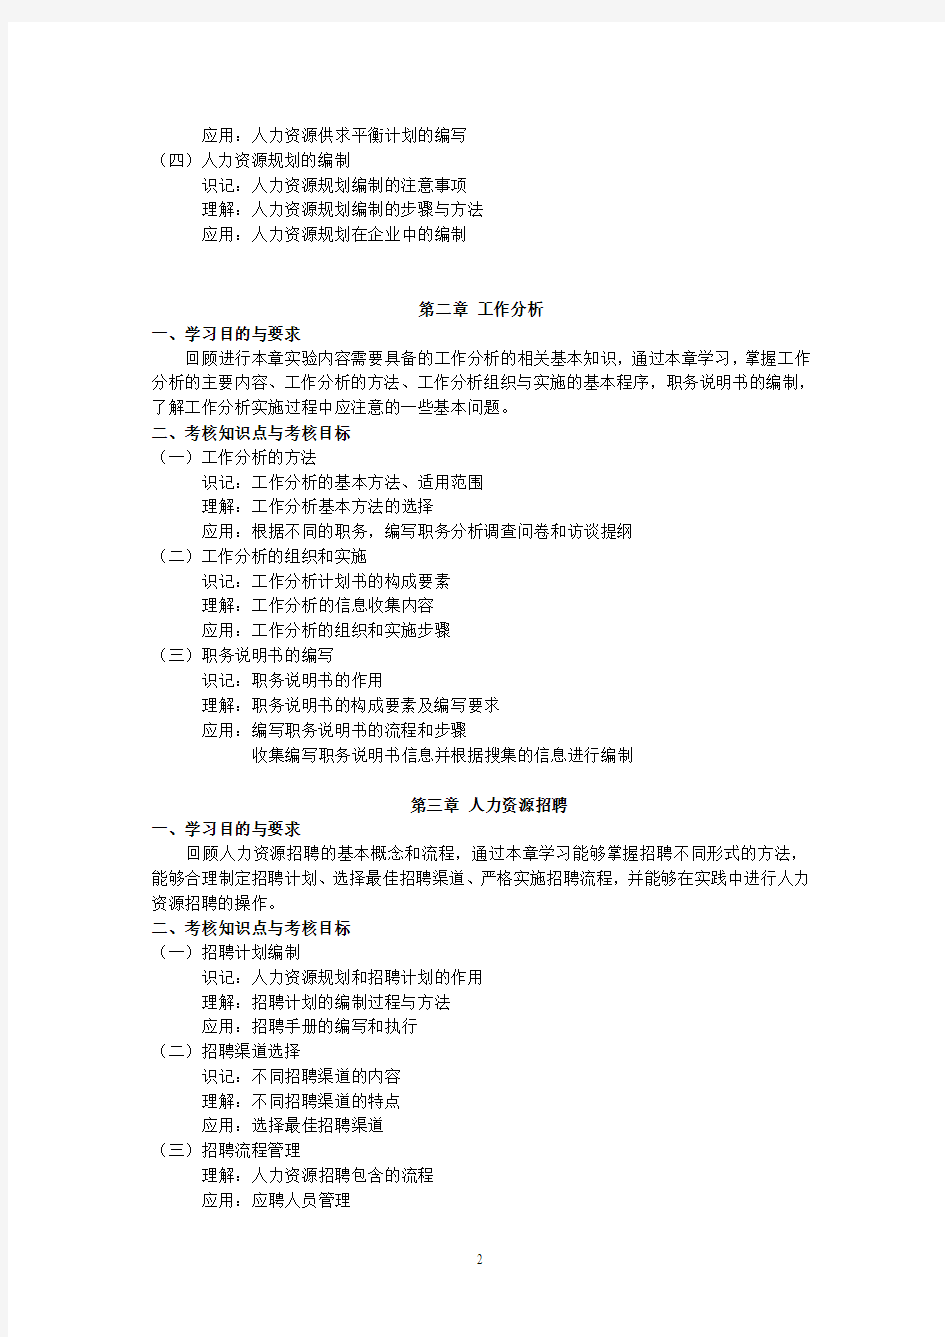 (人力资源管理高级实验)北京市高等教育自学考试课程考试大纲